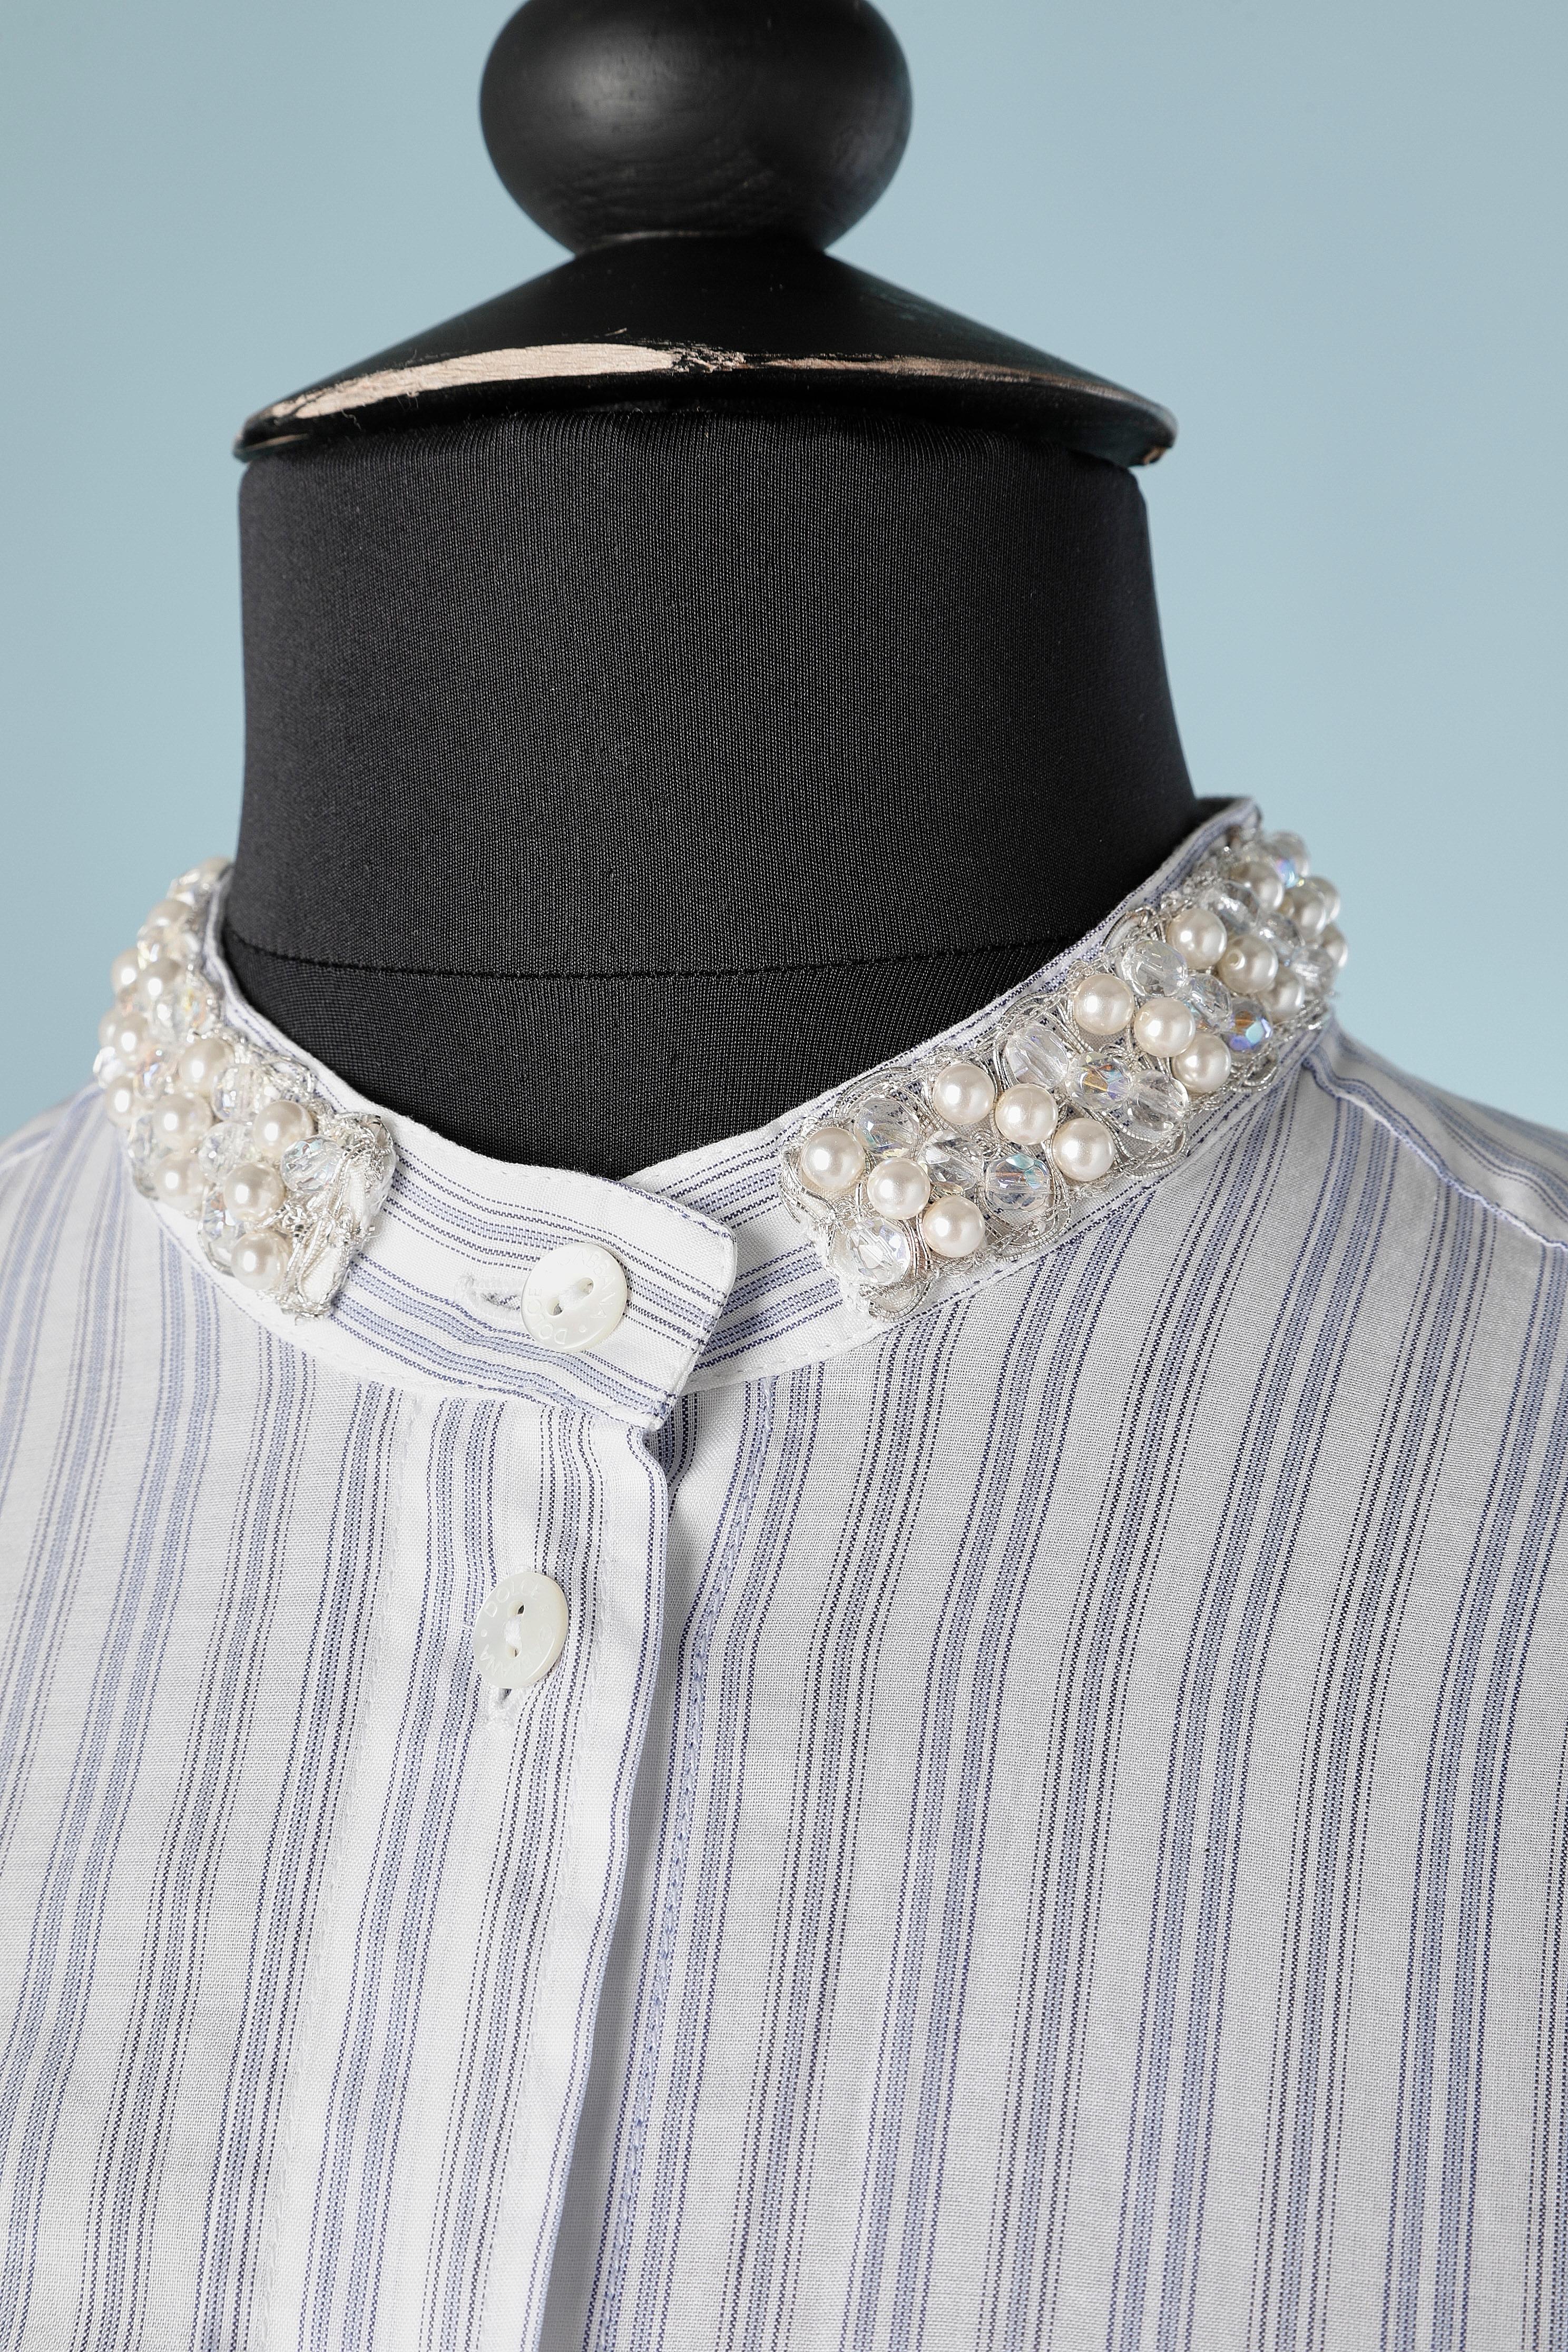 Gestreiftes Baumwollhemd mit Perlen- und Perlenstickereien im Mix mit silbernen Lurexfäden. 
Knöpfe aus Perlmutt mit Markenzeichen. Knöpfe und Knopfloch auch an den Manschetten. 
Größe 36 (It) 6 (Us) S 